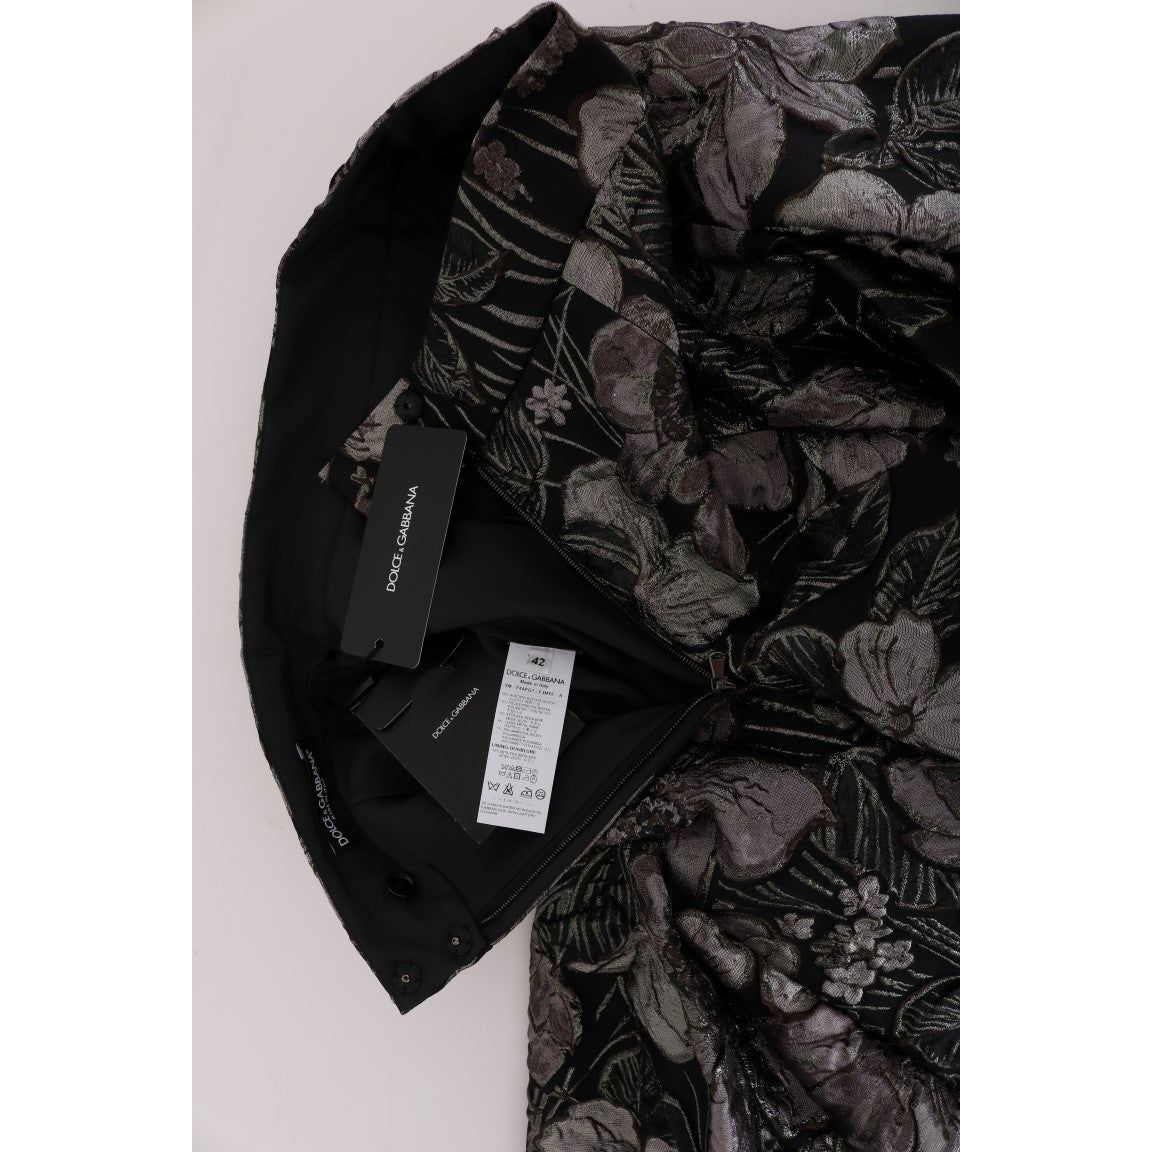 Dolce & Gabbana Elegant Black Silver-Floral Straight Skirt black-silver-brocade-floral-skirt